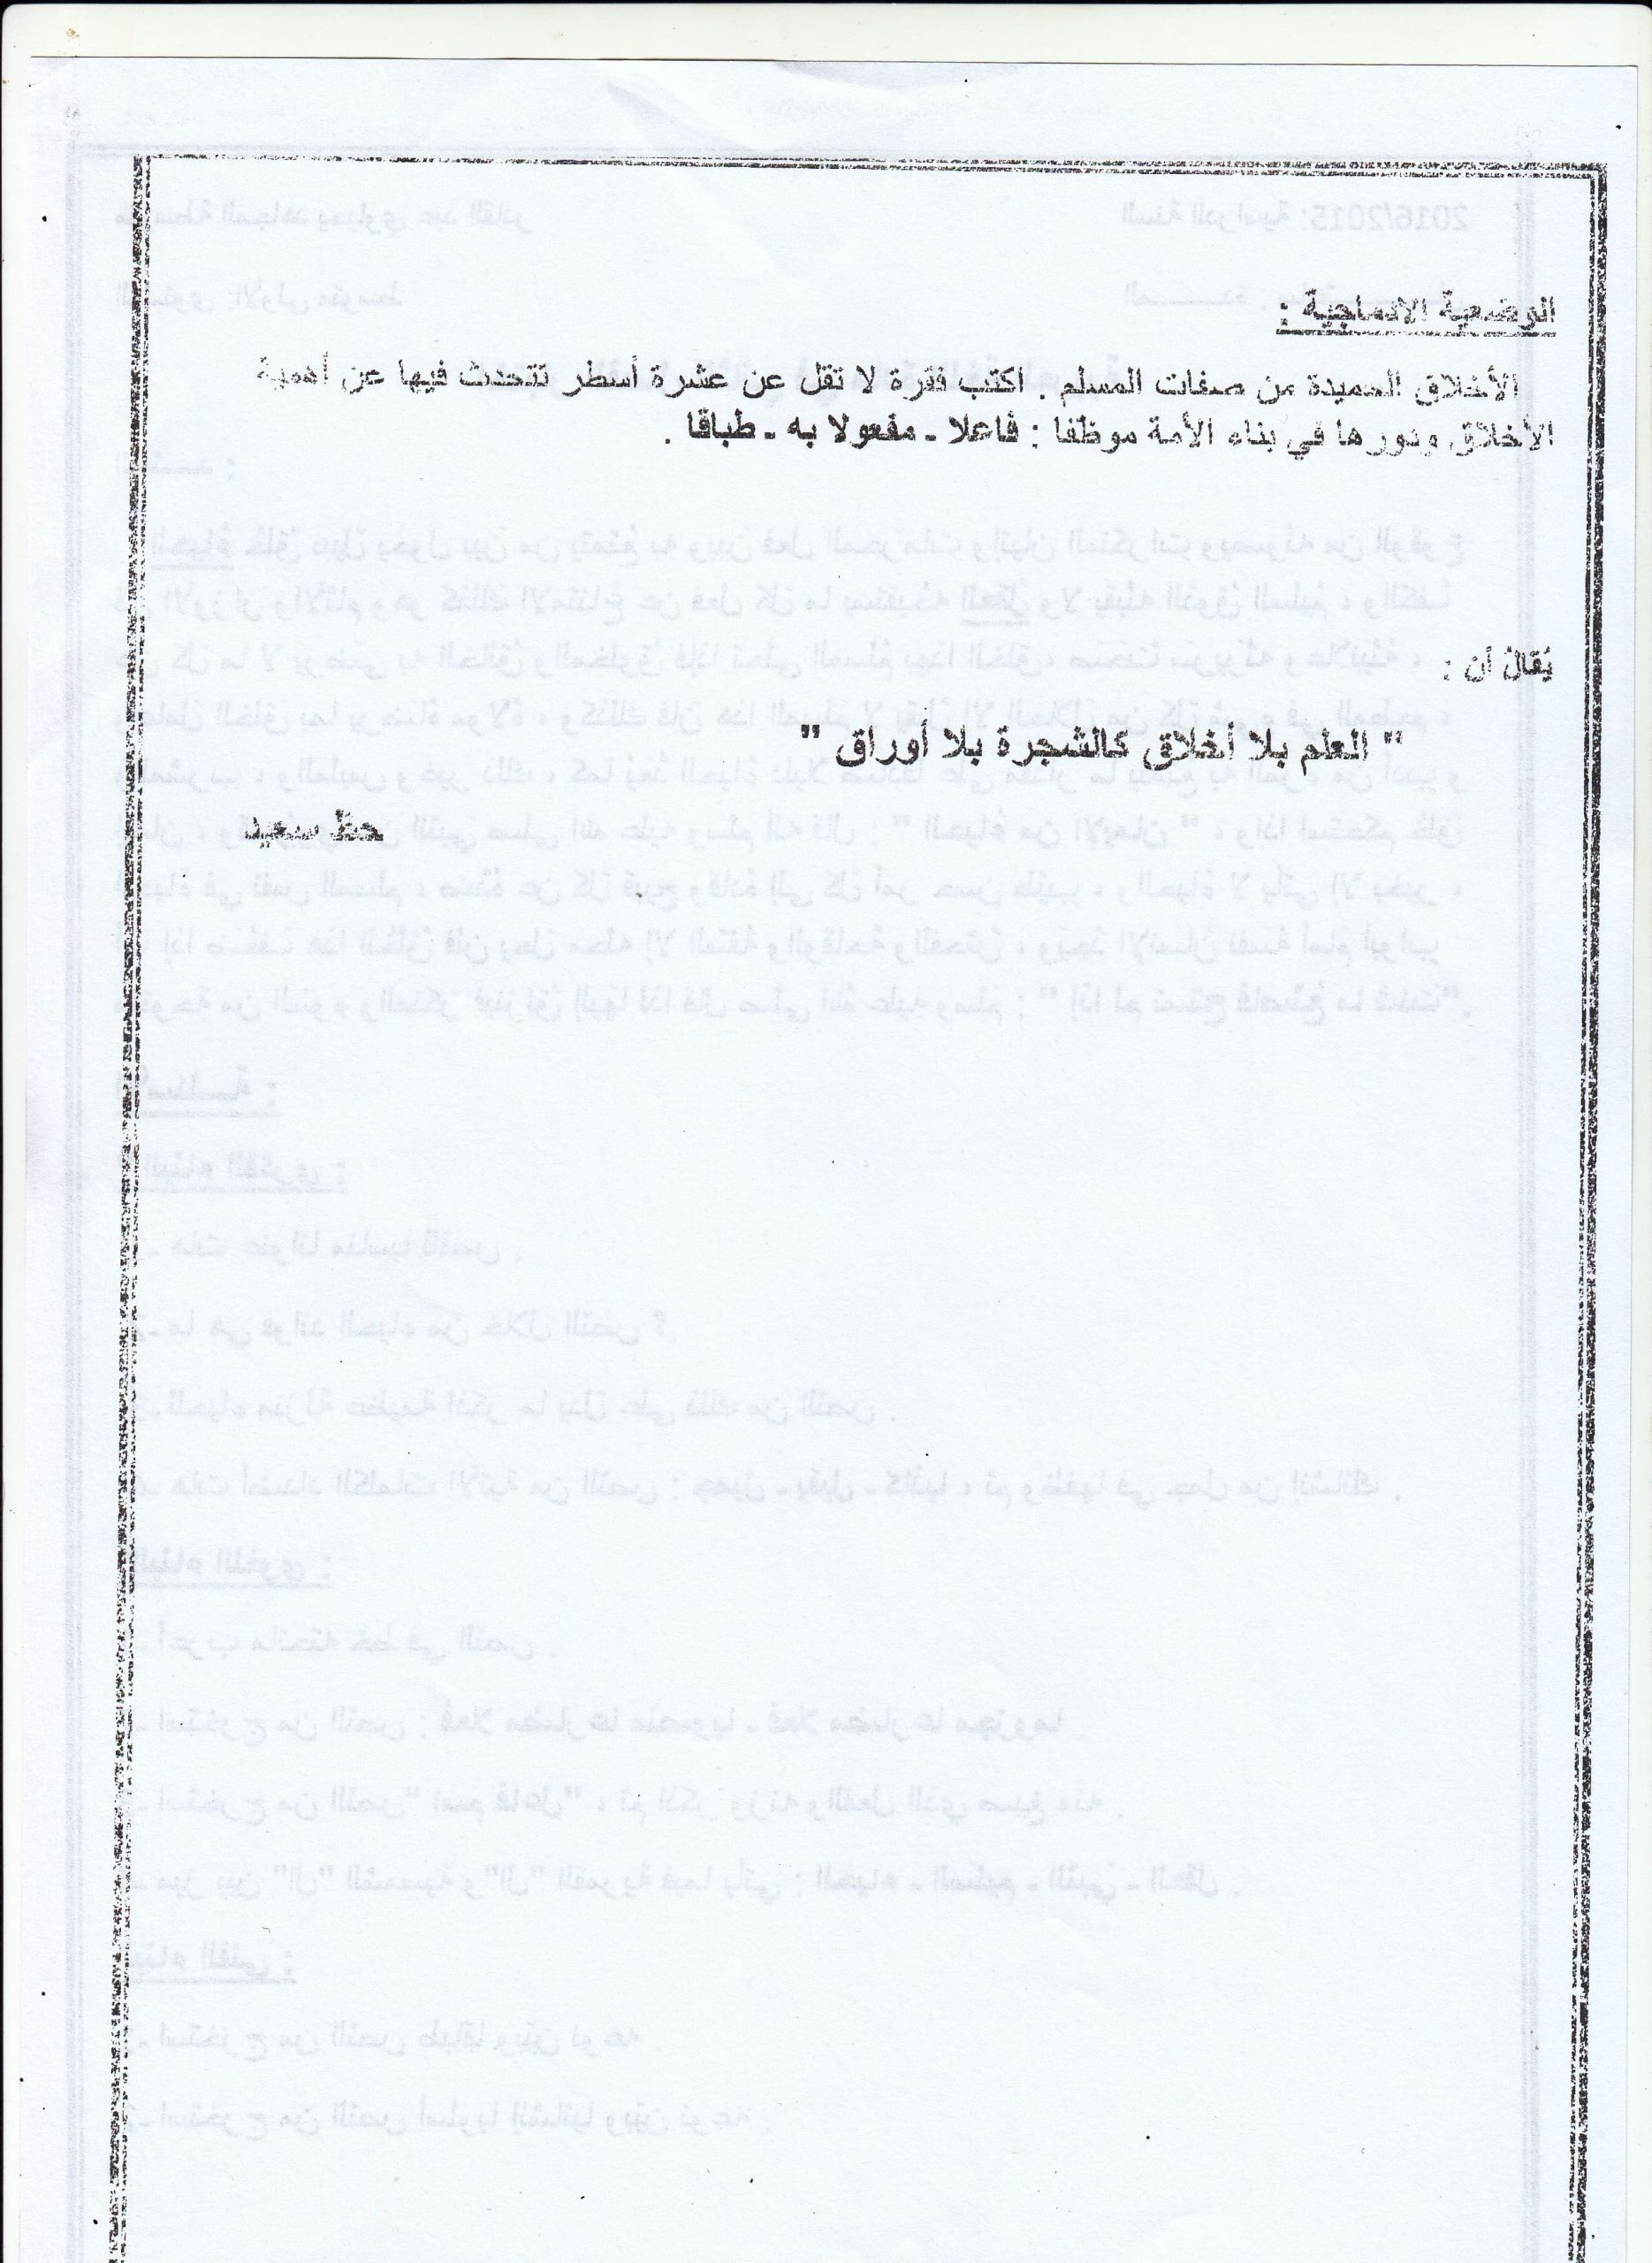 إختبار الفصل الثاني في مادة اللغة العربية للسنة الأولى متوسط